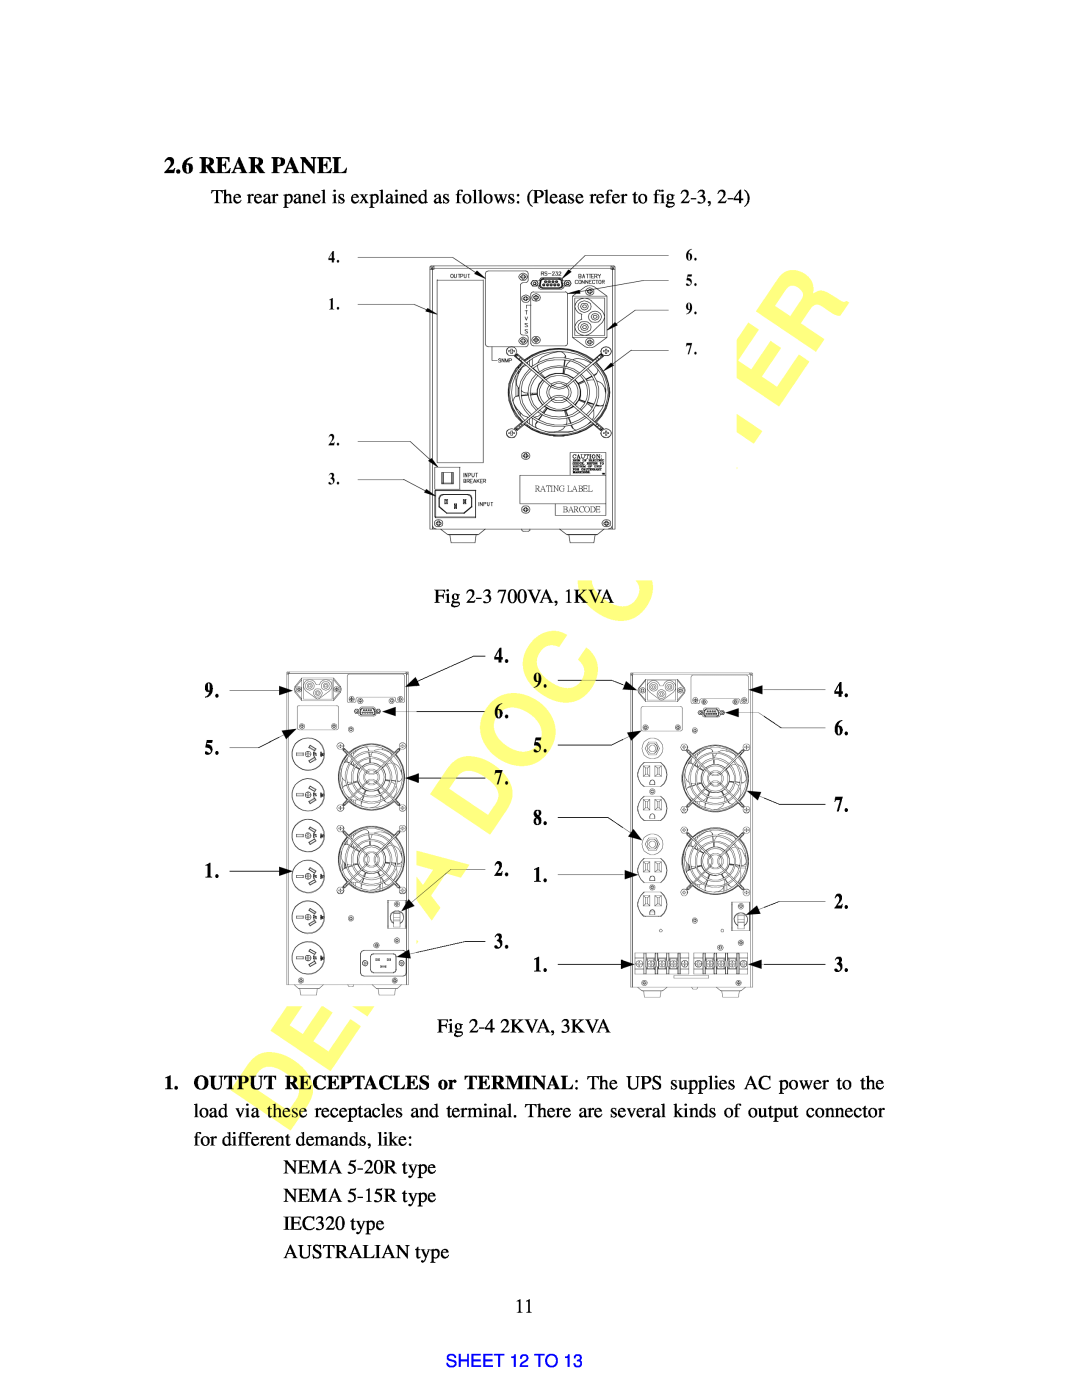 Delta Electronics Rear Panel, The rear panel is explained as follows Please refer to -3, 3 700VA, 1KVA, 4 2KVA, 3KVA 